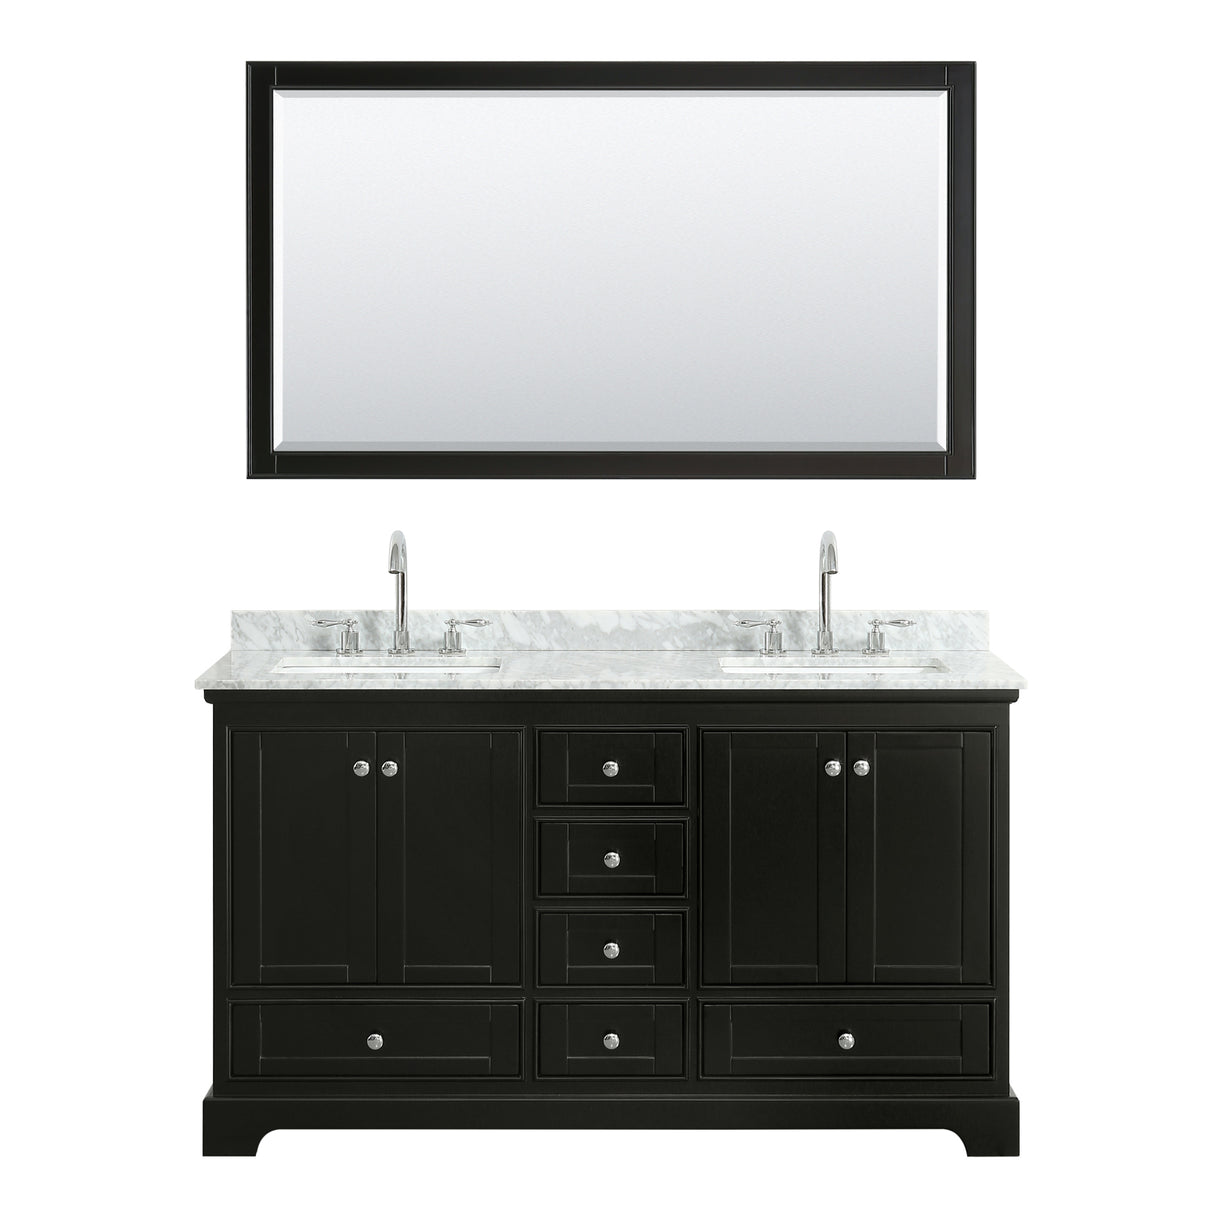 Deborah 60 Inch Double Bathroom Vanity in Dark Espresso White Carrara Marble Countertop Undermount Square Sinks and 58 Inch Mirror